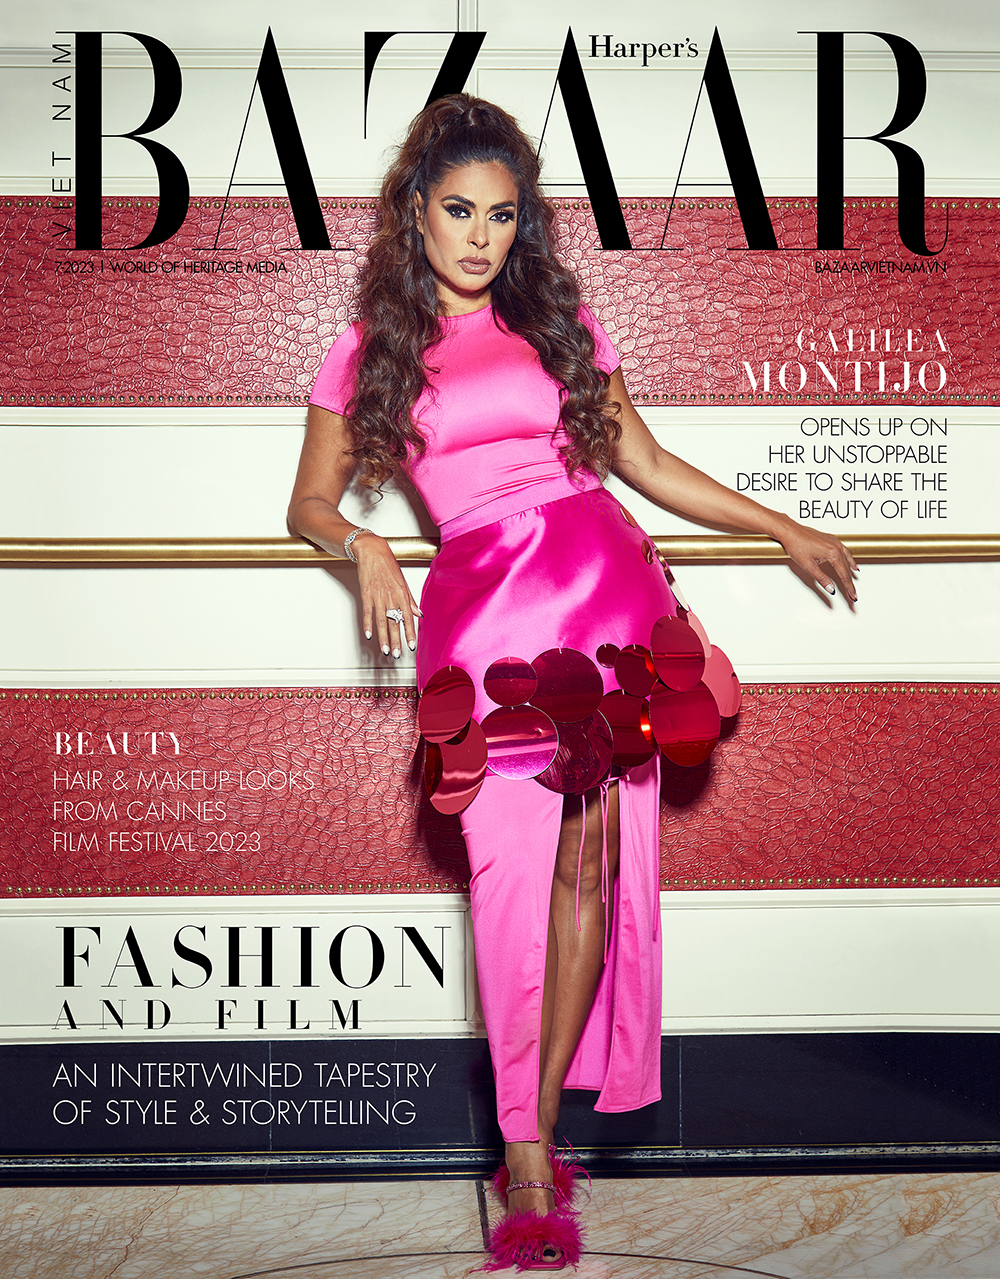 Galilea Montijo on the cover of Harper’s Bazaar Vietnam on 7/23.